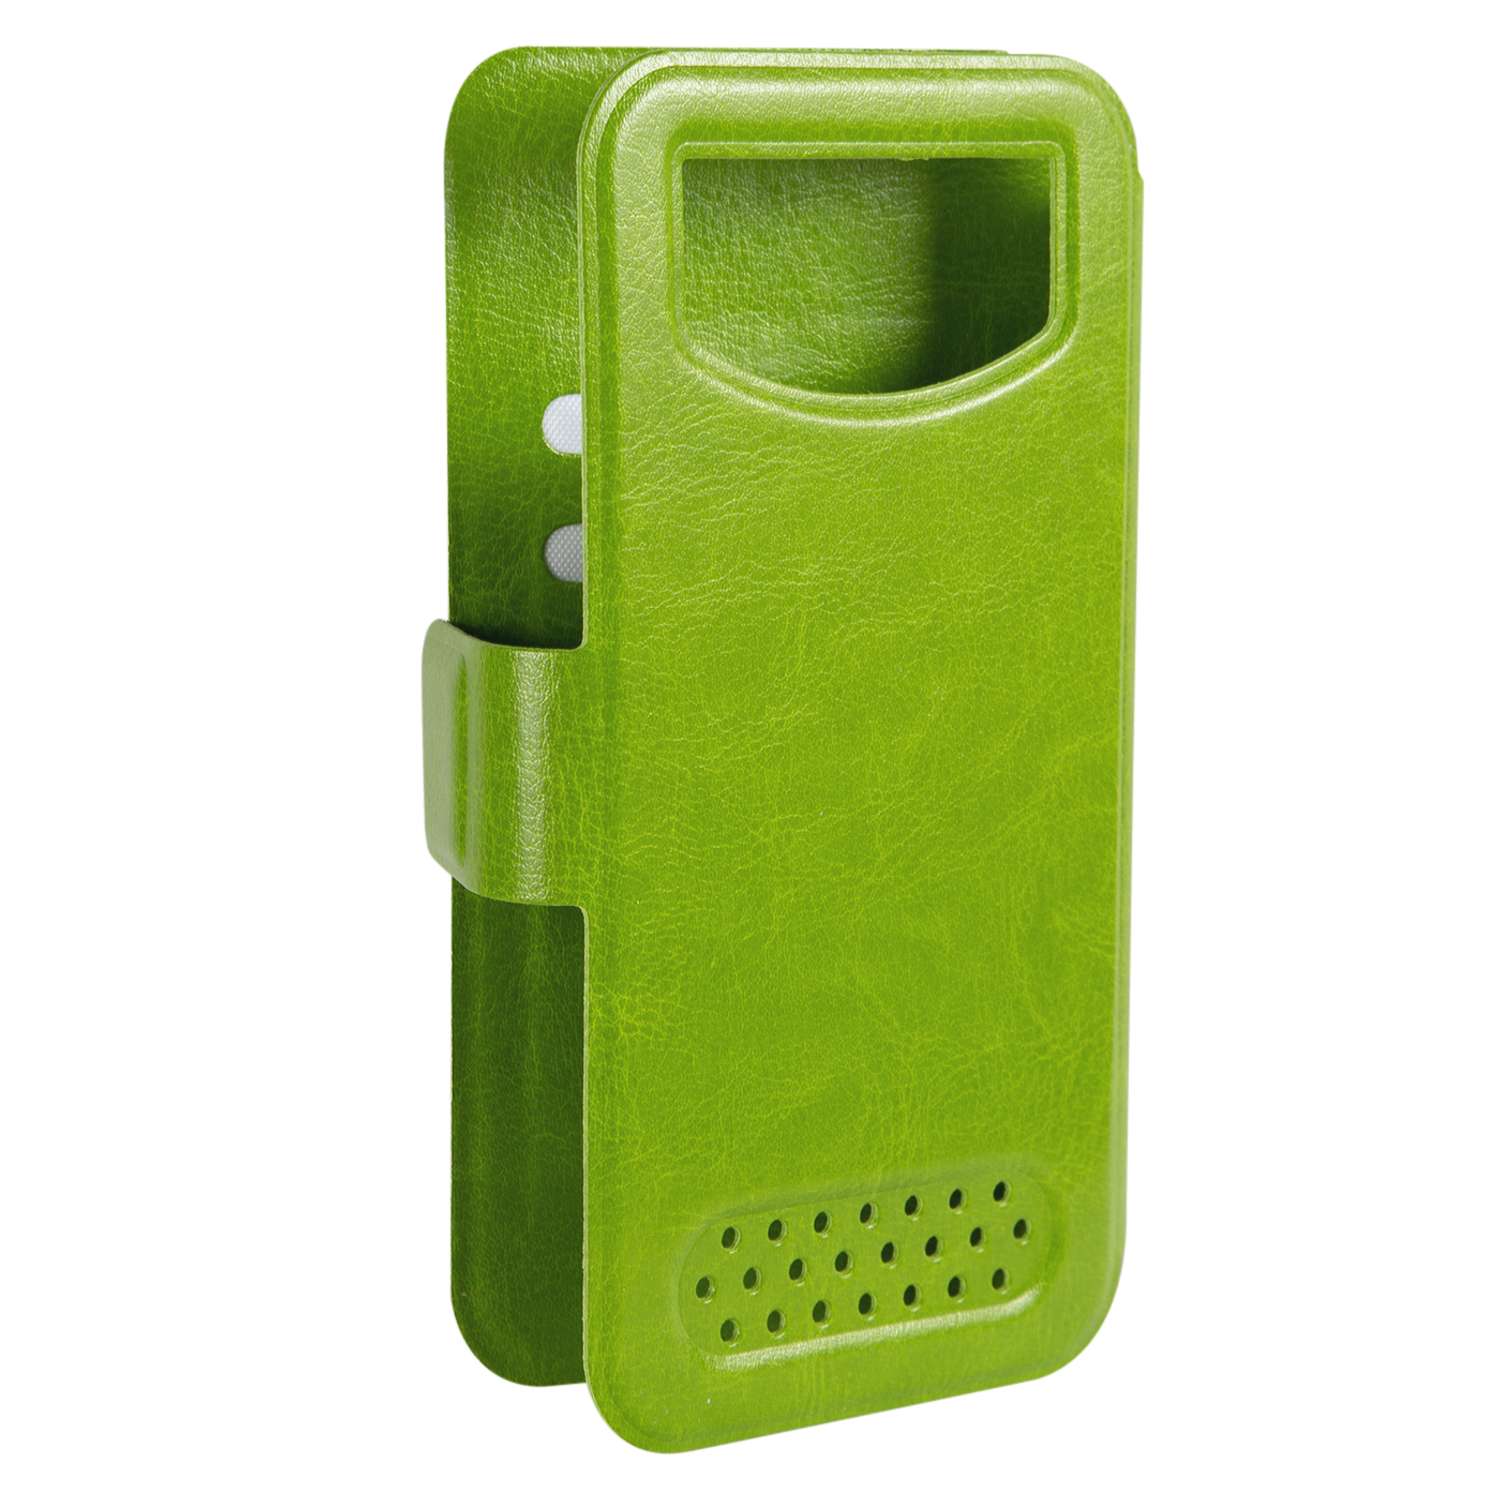 Чехол универсальный iBox Universal для телефонов 4.2-5 дюйма зеленый - фото 3